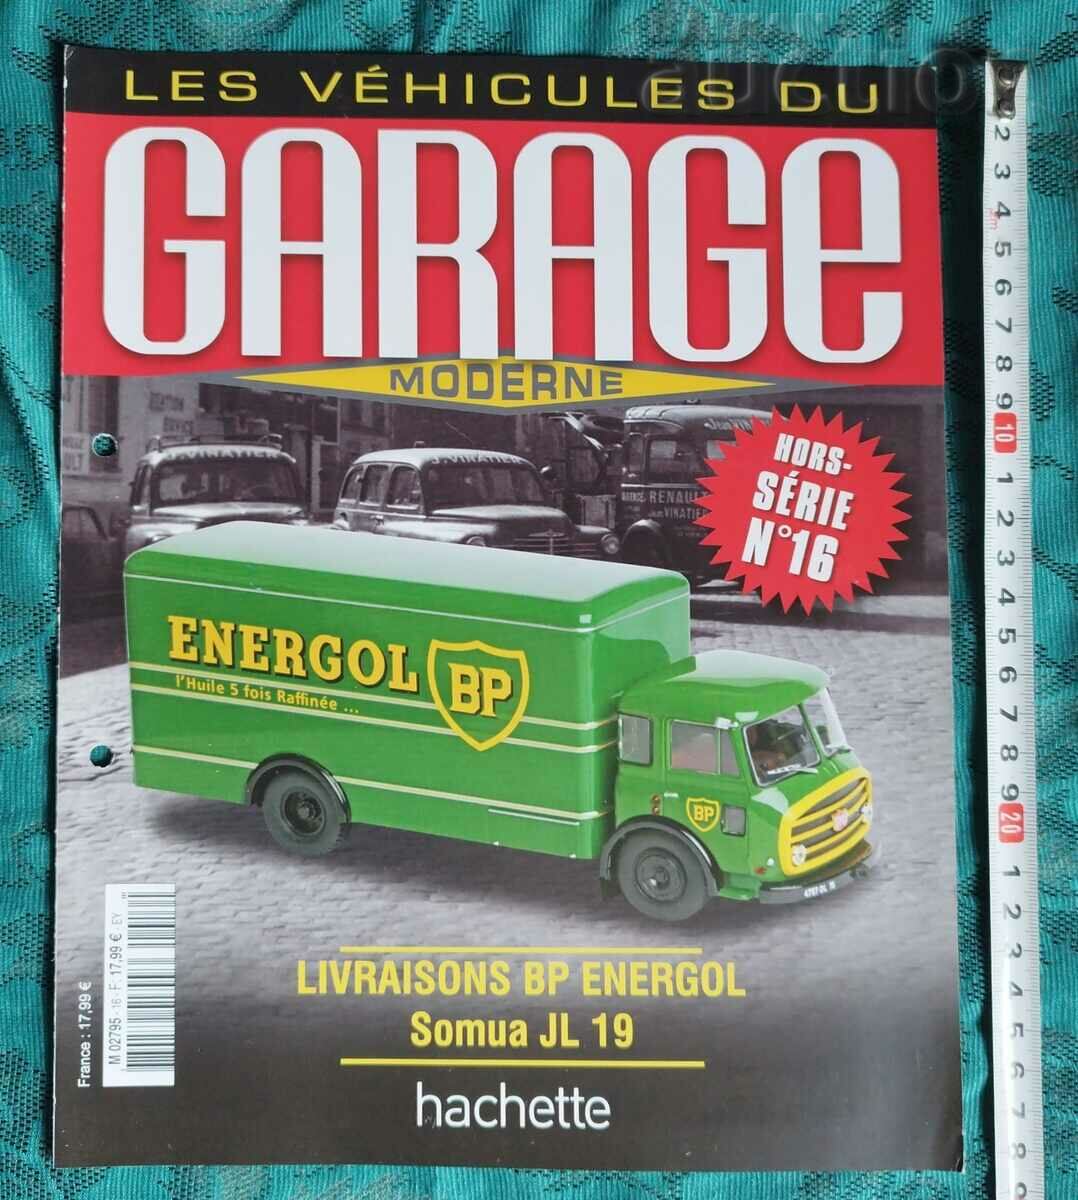 Revista LES VÉHICULES DU GARAGE MODERNE HORS- SÉRIE N°16...